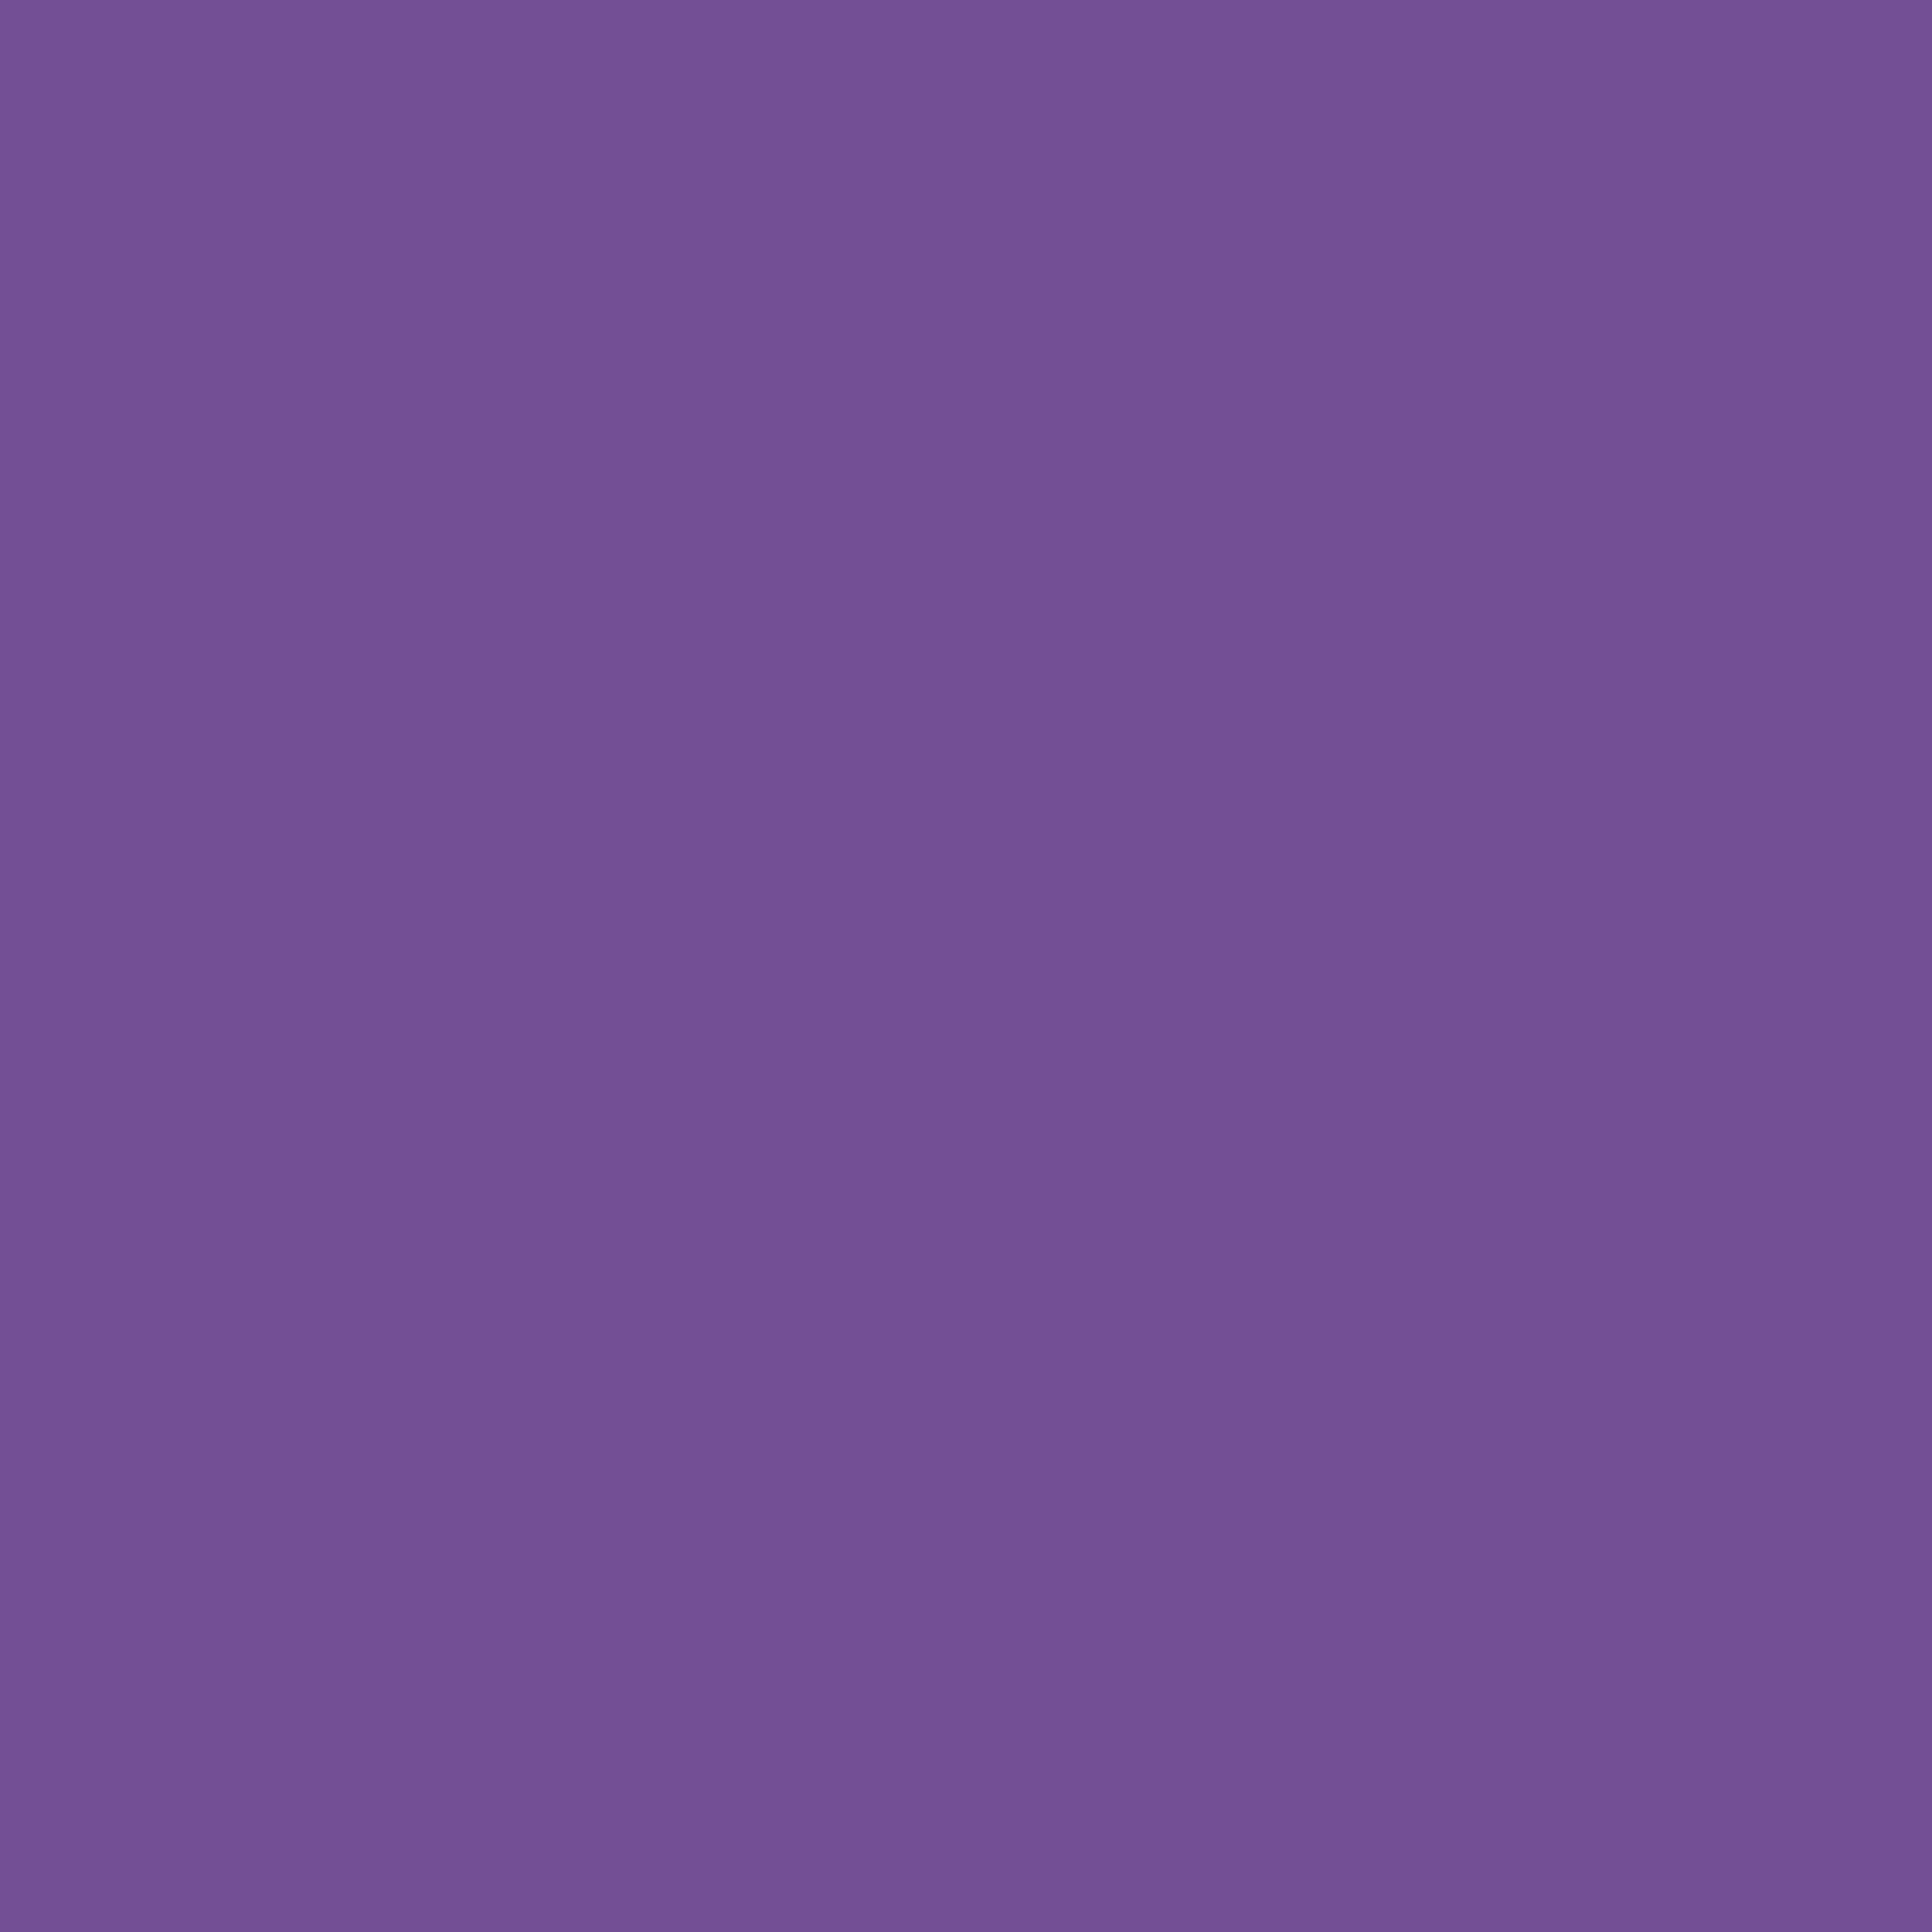 2048x2048 Dark Lavender Solid Color Background